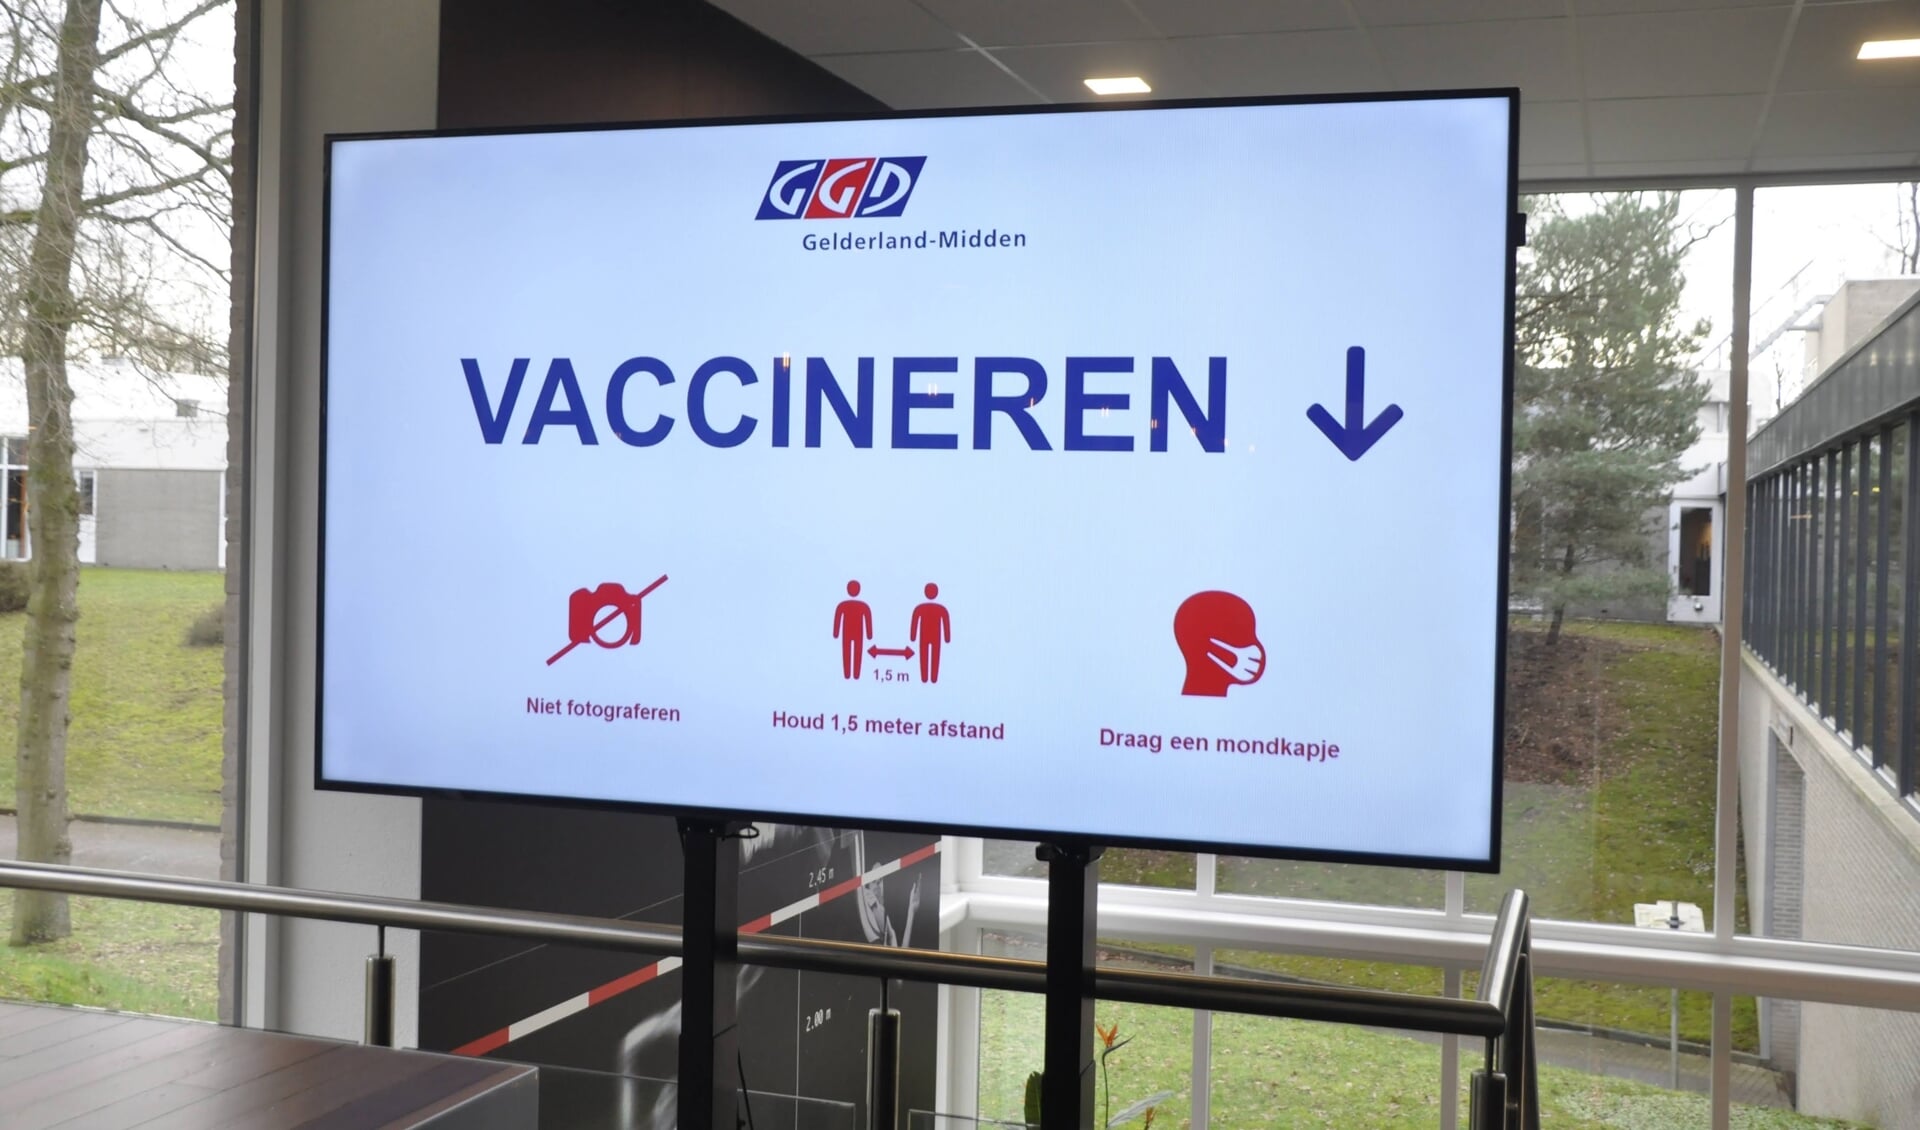 De GGD vaccineert nooit aan huis, maar heeft speciale prikocaties ingericht. Burgemeester Eppie Klein waarschuwt de inwoners van Scherpenzeel waakzaam te zijn voor 'vaccinoplichters'  criminelen die zich voordoen als medewerkers van de GGD en aan huis zogenaamde vaccins verkopen.